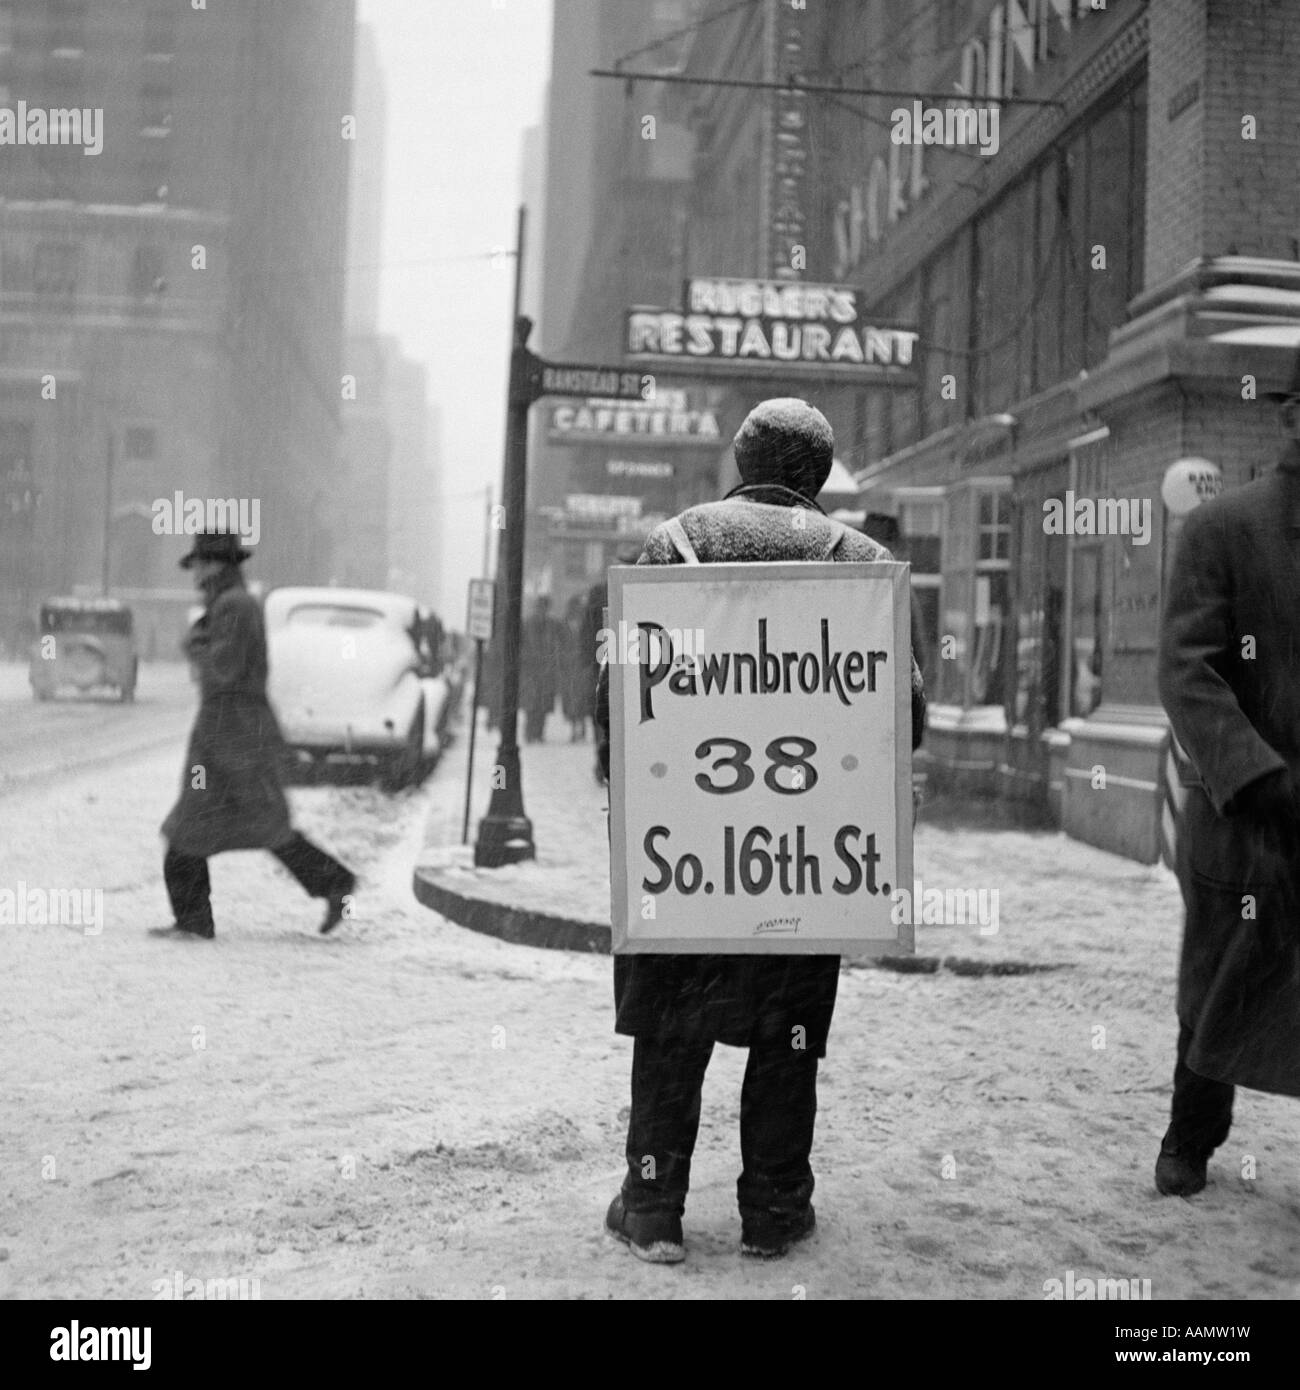 1930s WINTER STREET SCENE OF MAN WEARING PAWNBROKER SANDWICH BOARD Stock Photo